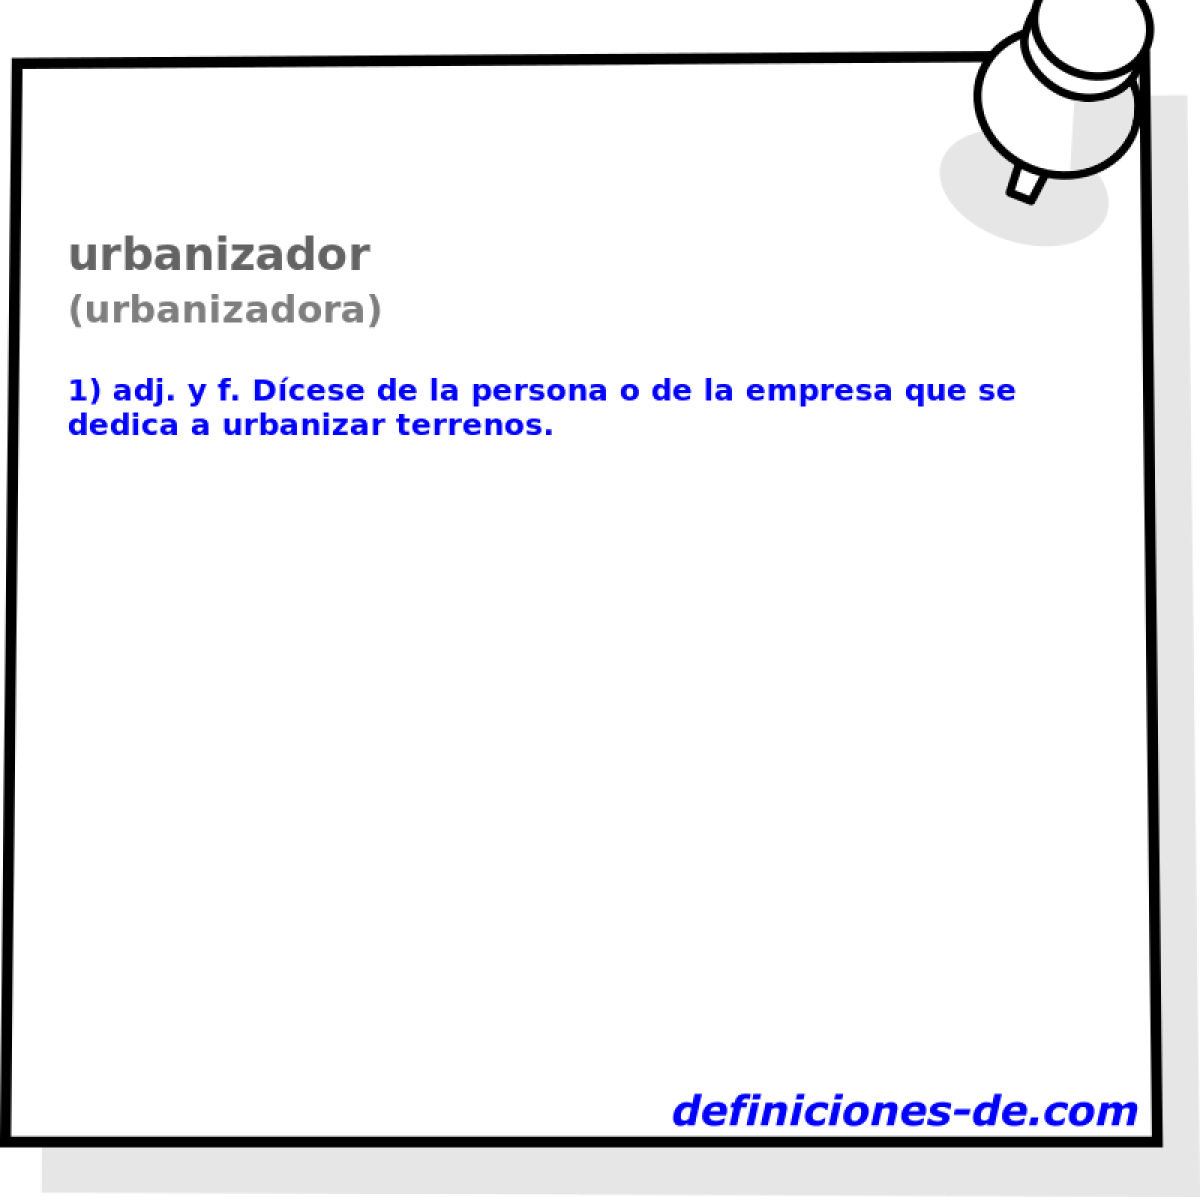 urbanizador (urbanizadora)